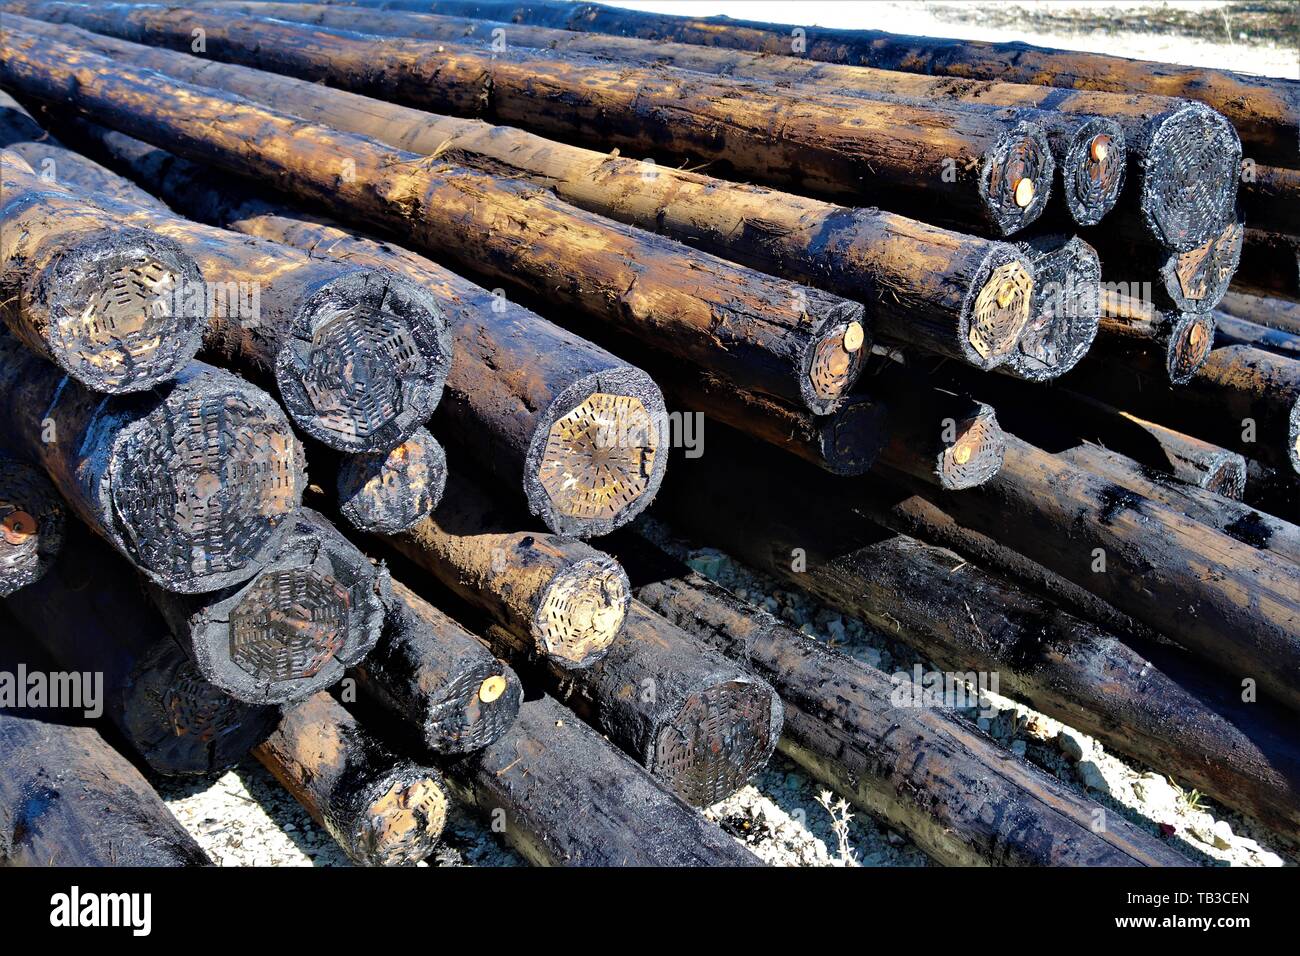 Mit Kreosot behandeltes Holz, das als utility Pole verwendet. Diese Behandlung schützt das Holz von den Elementen und Schädlinge wie Termiten. Stockfoto